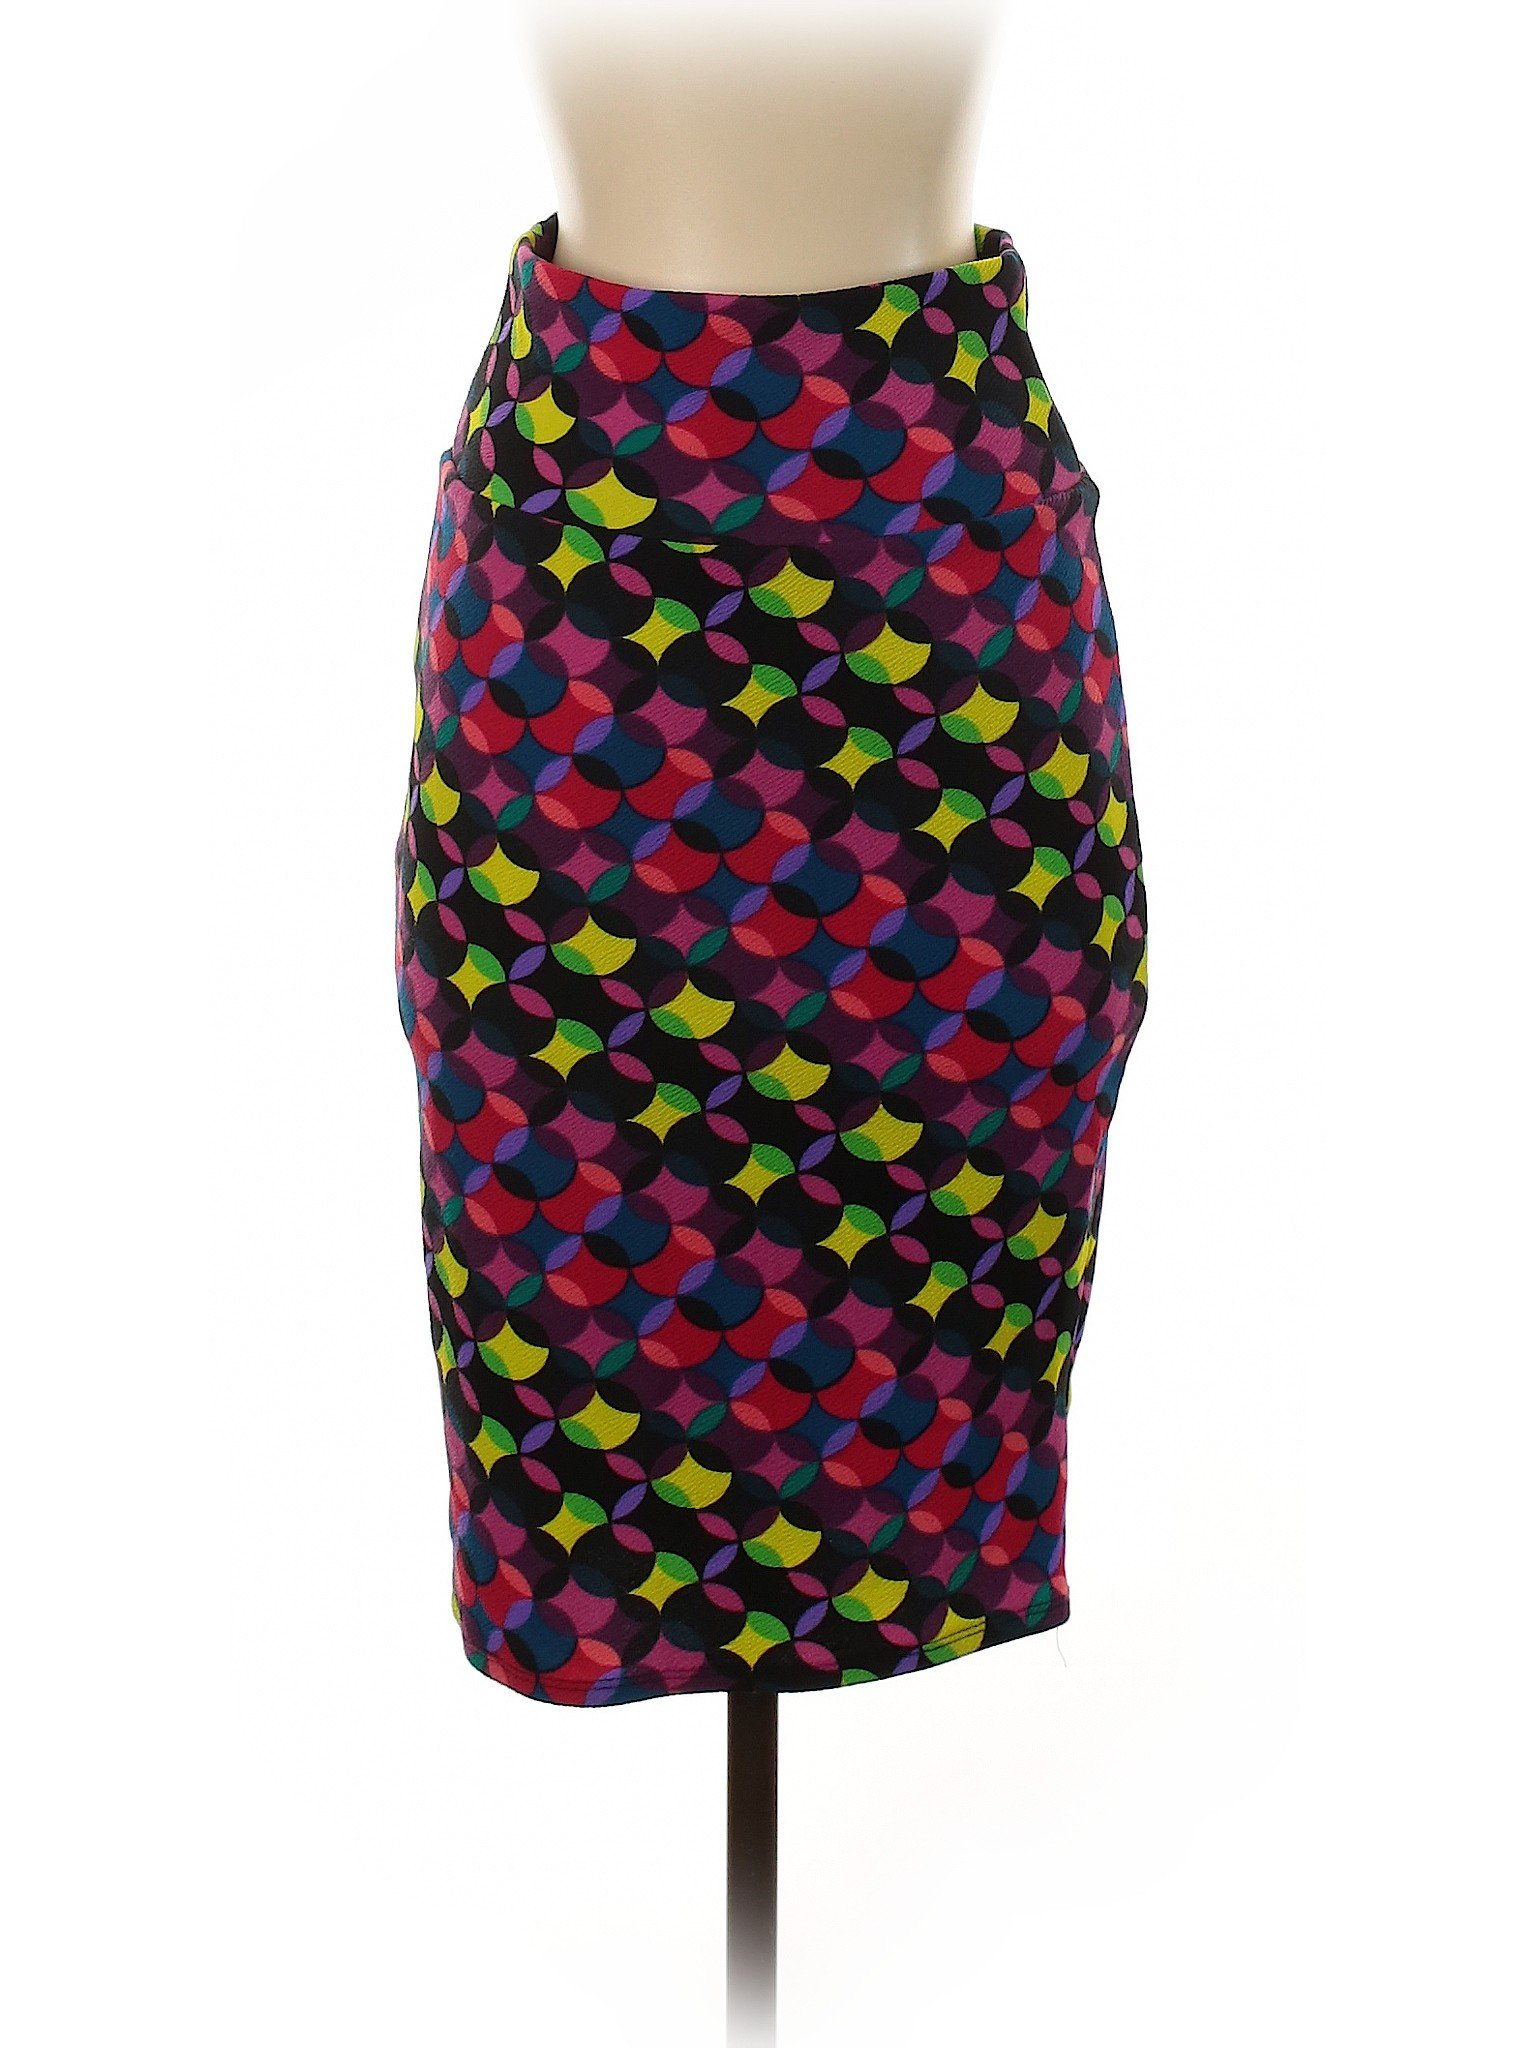 Lularoe Women Purple Casual Skirt XS | eBay